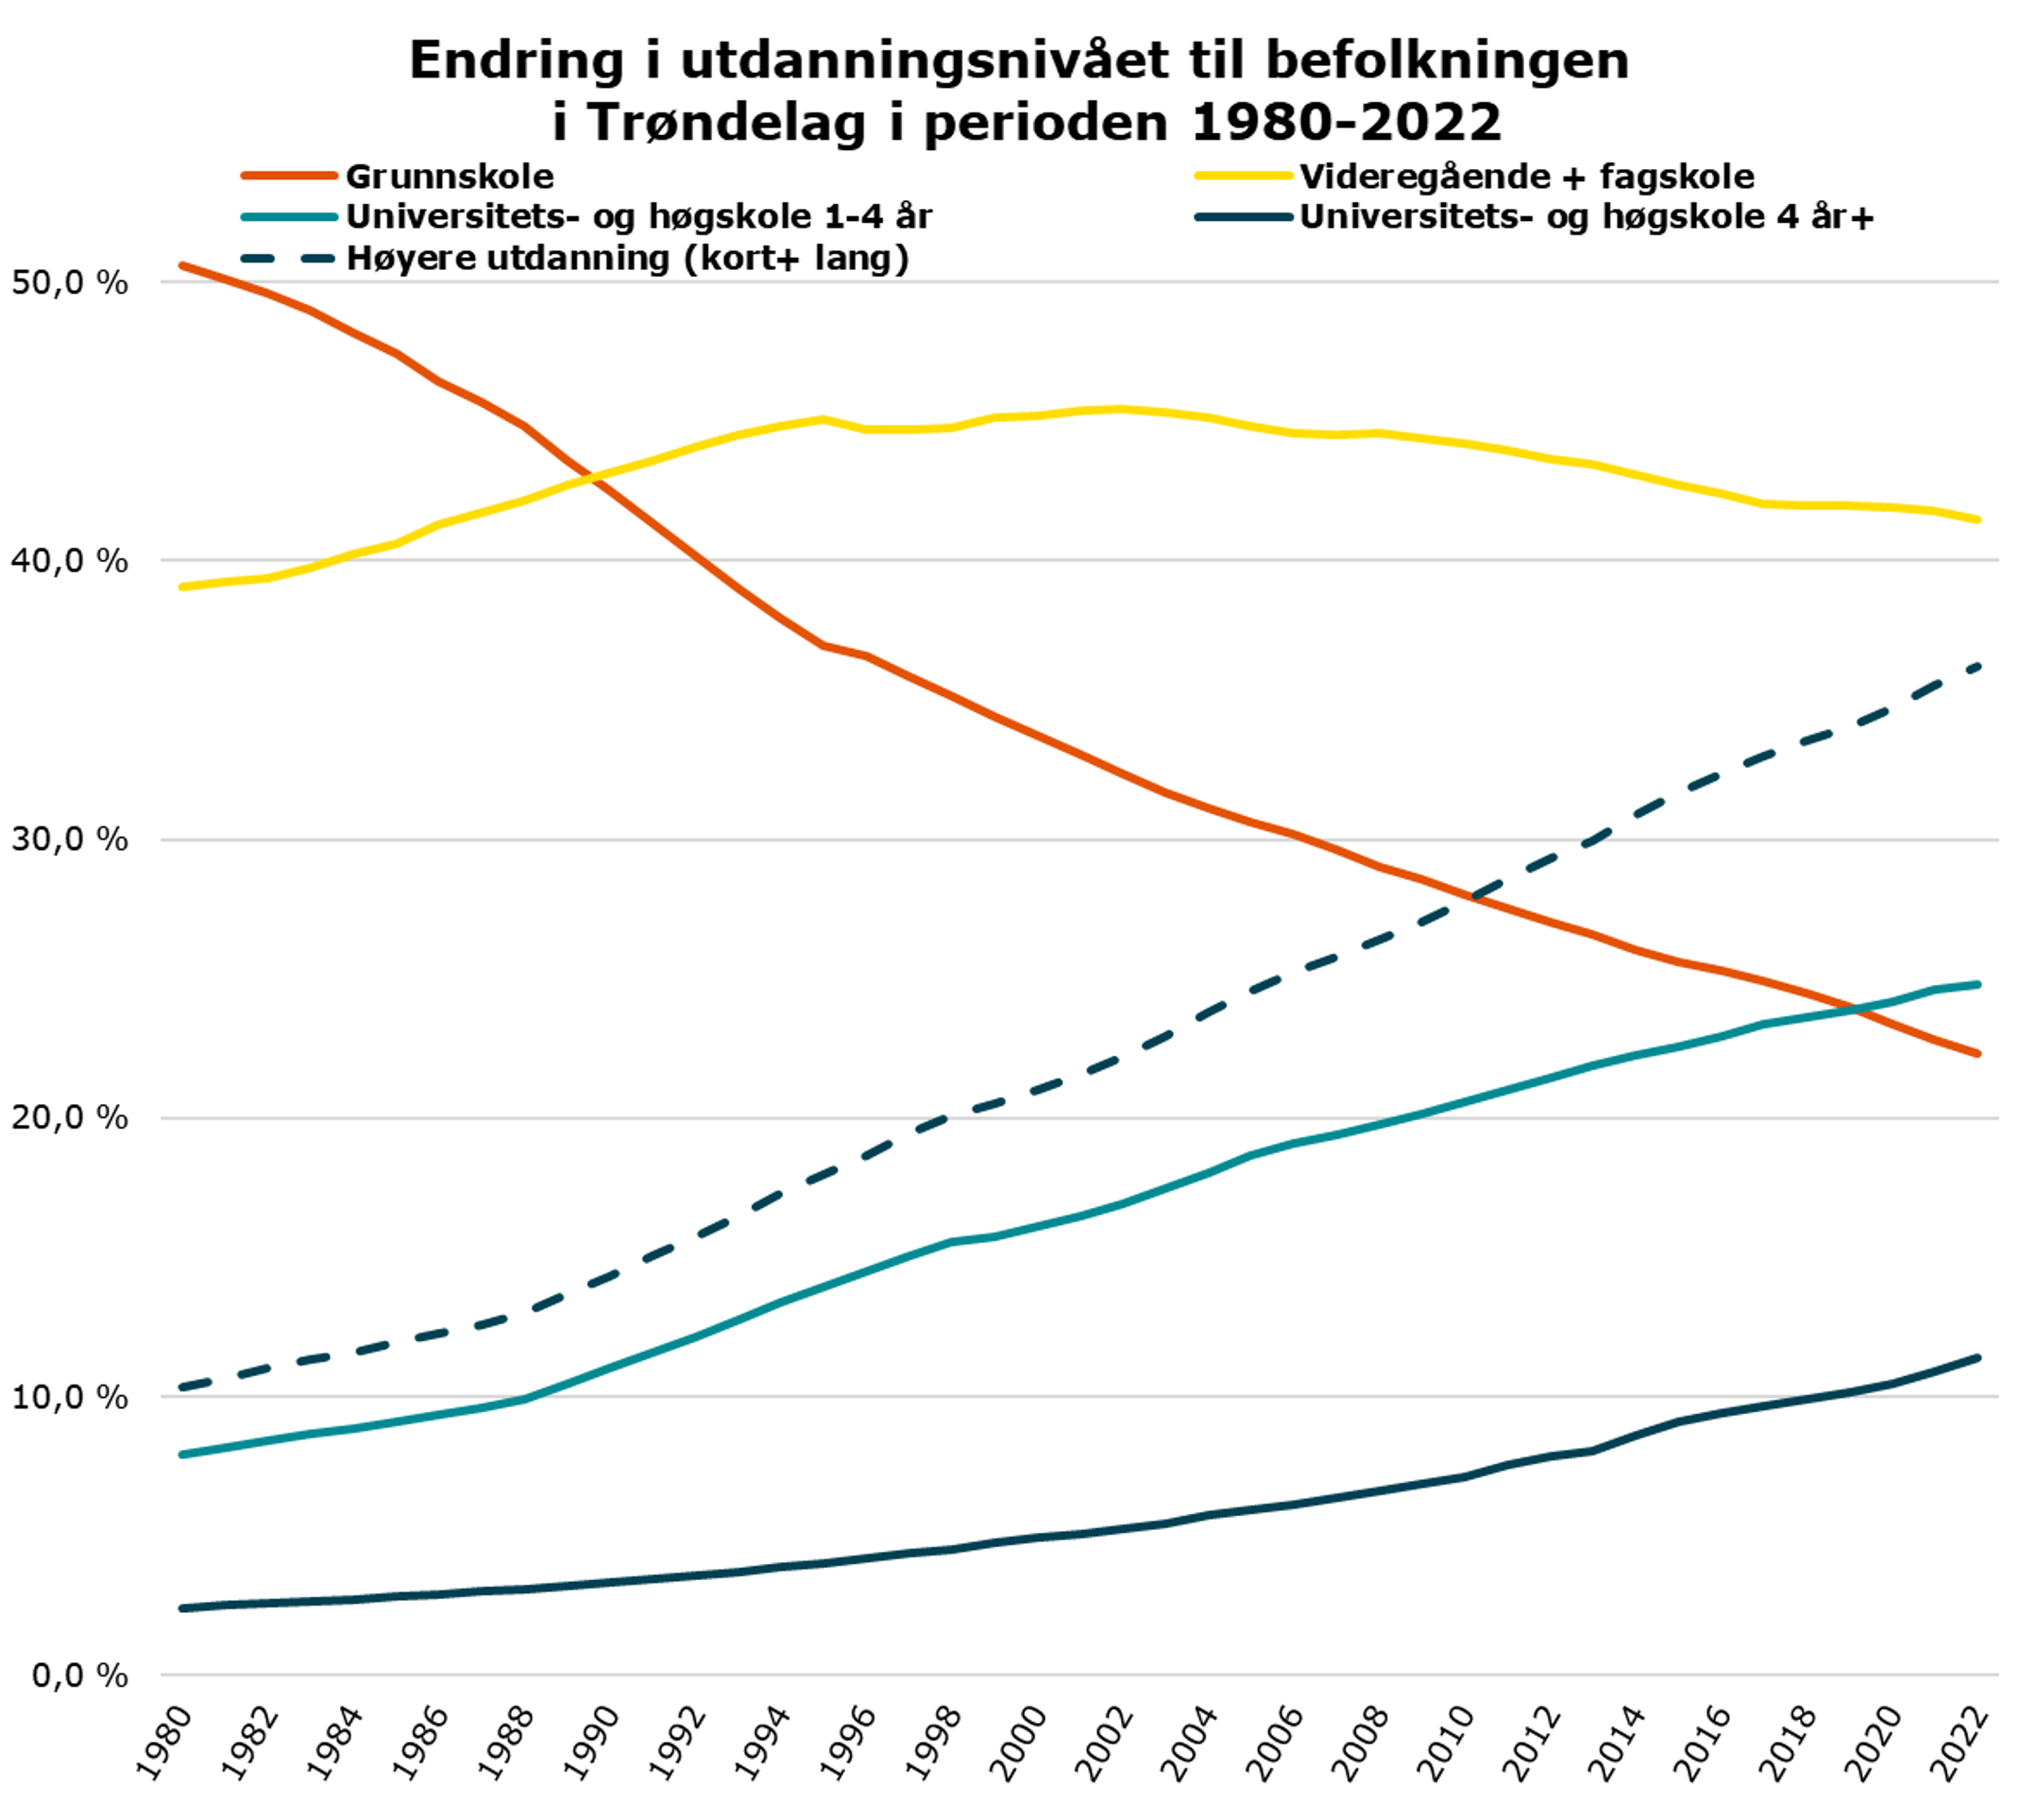 Endring i utdanningsnivået til befolkningen i Trøndelag i perioden 1980-2022